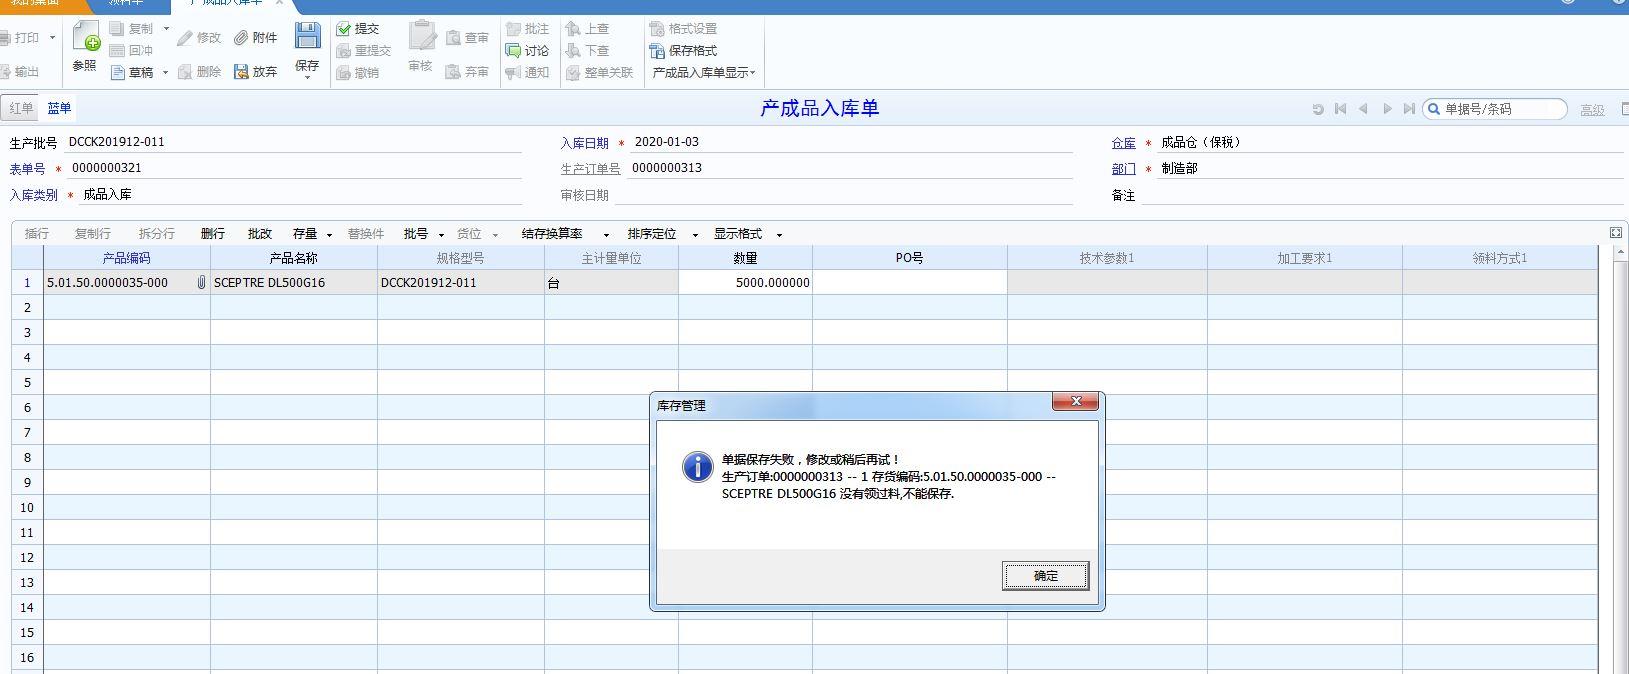 进销存管理用什么软件设计
:博兴滨州进销存软件公司
